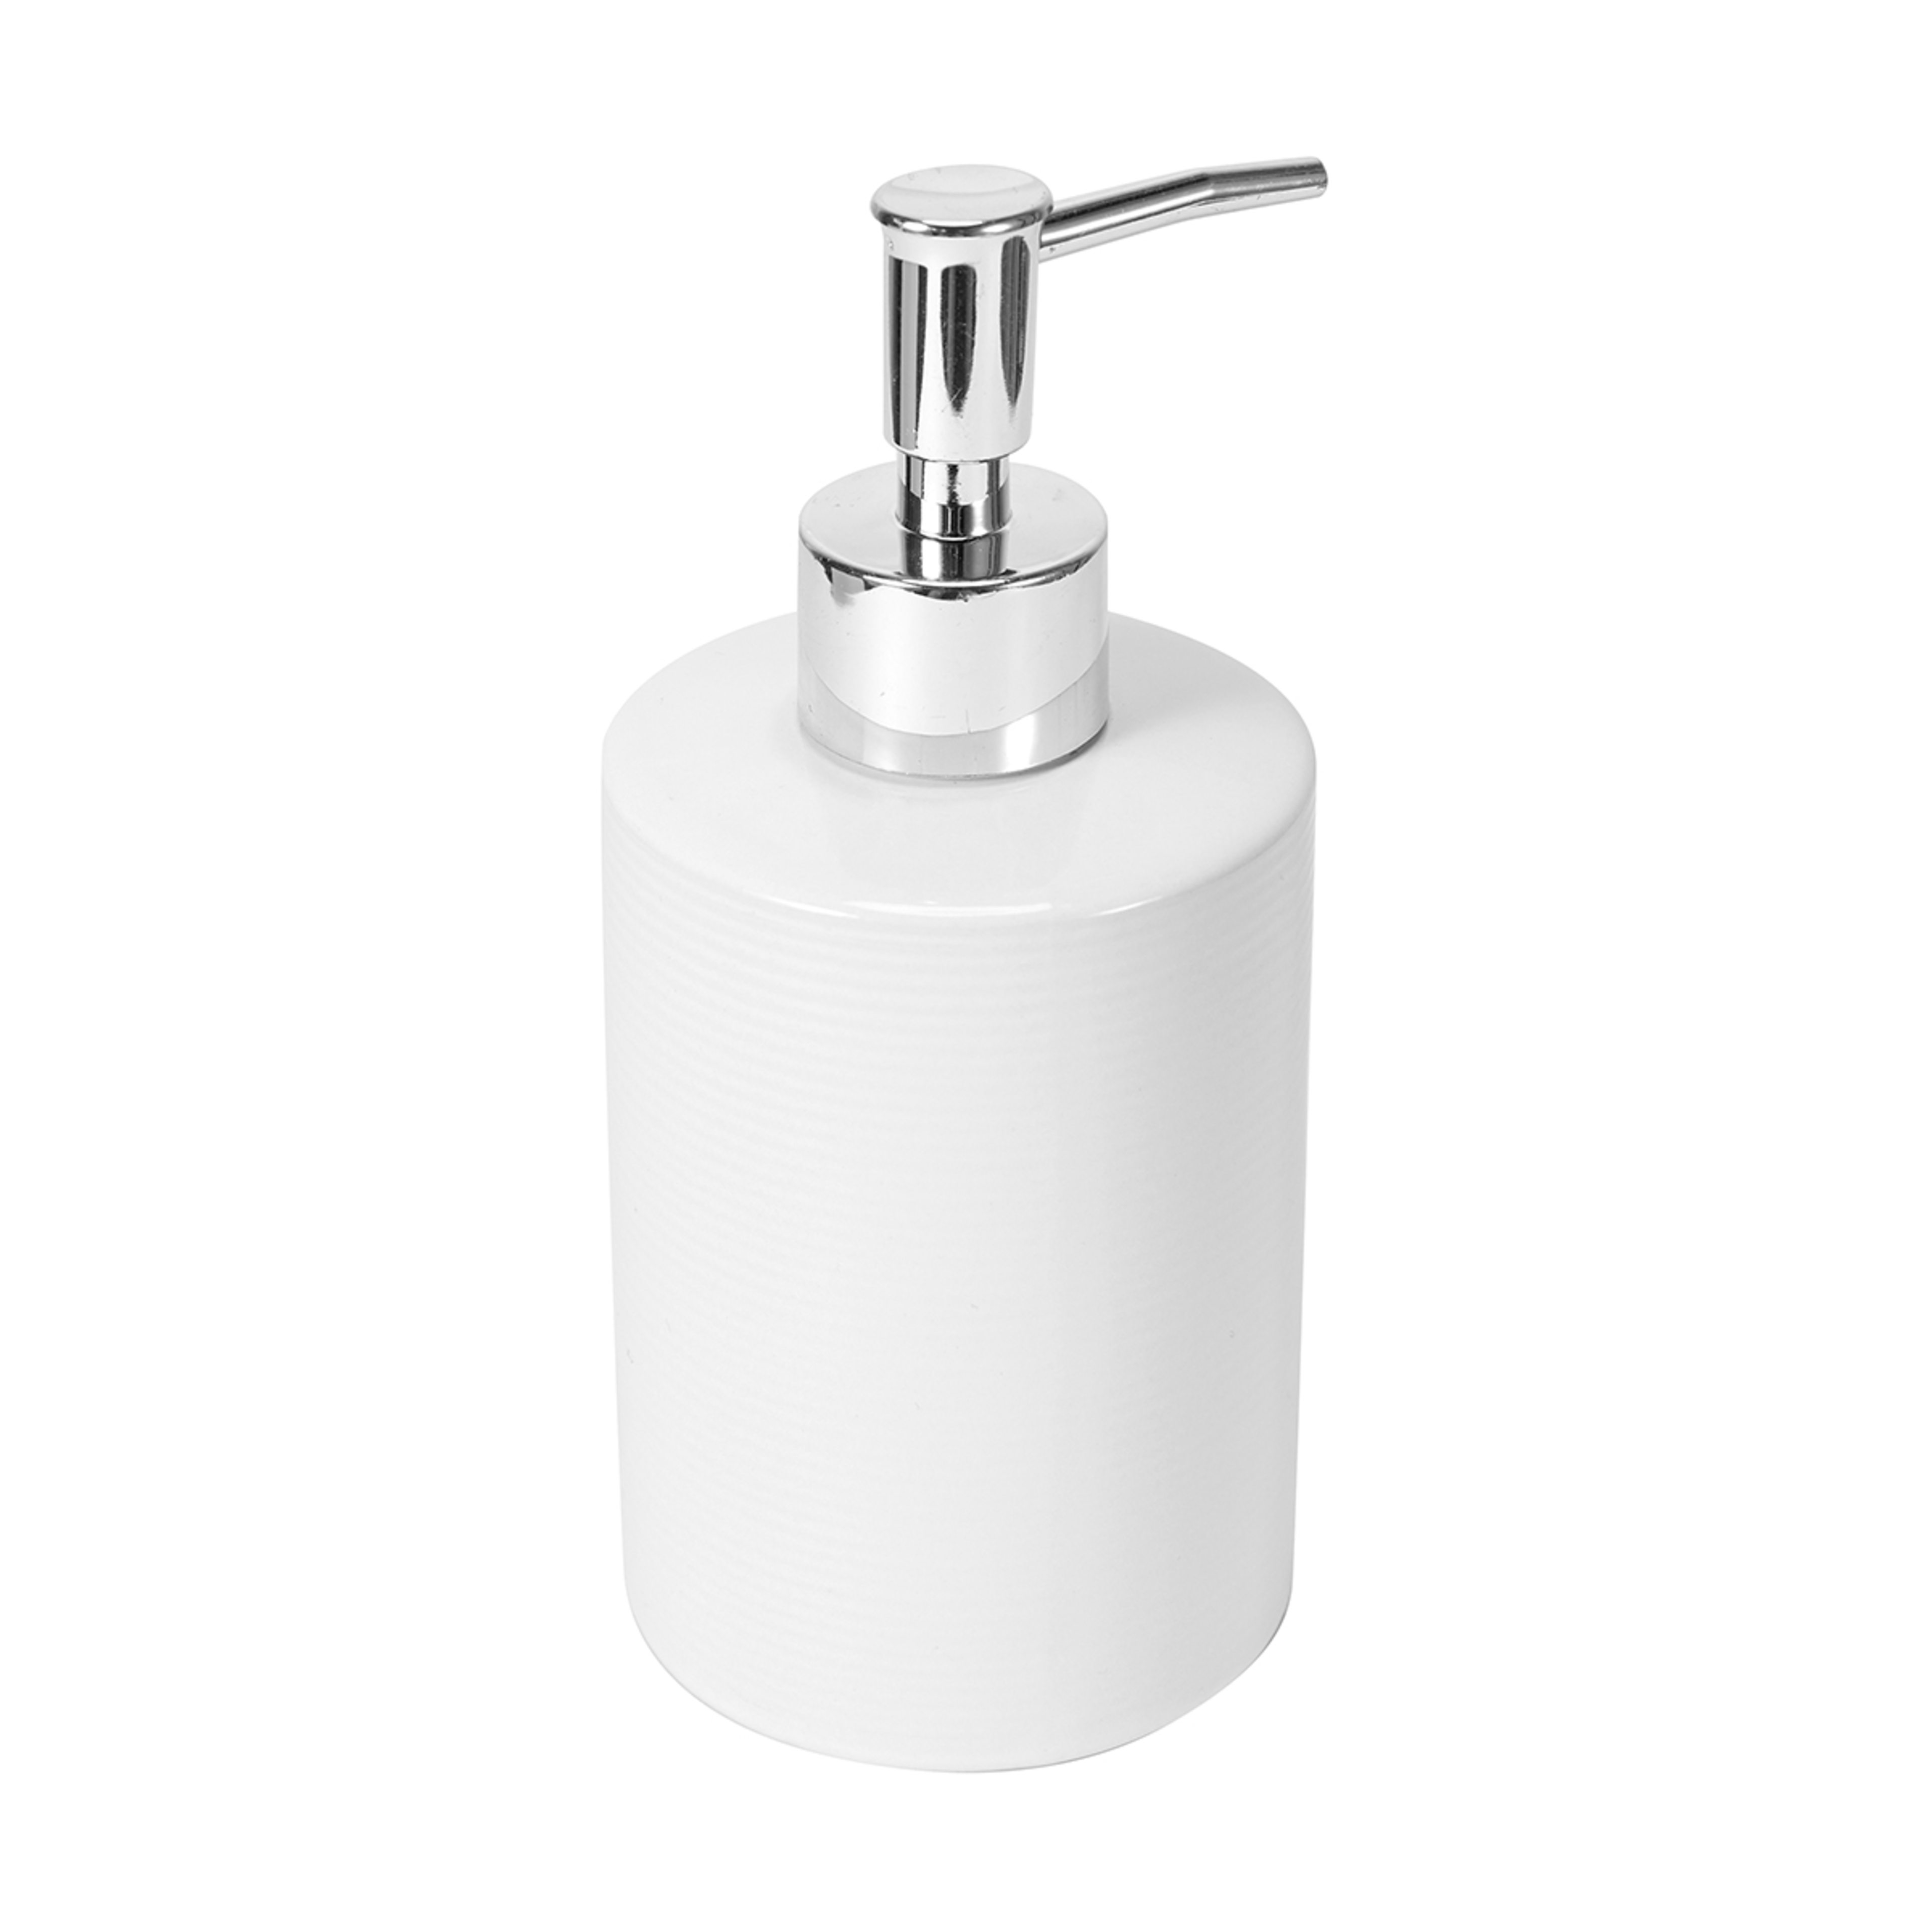 Ribbed Soap Dispenser White - Kmart